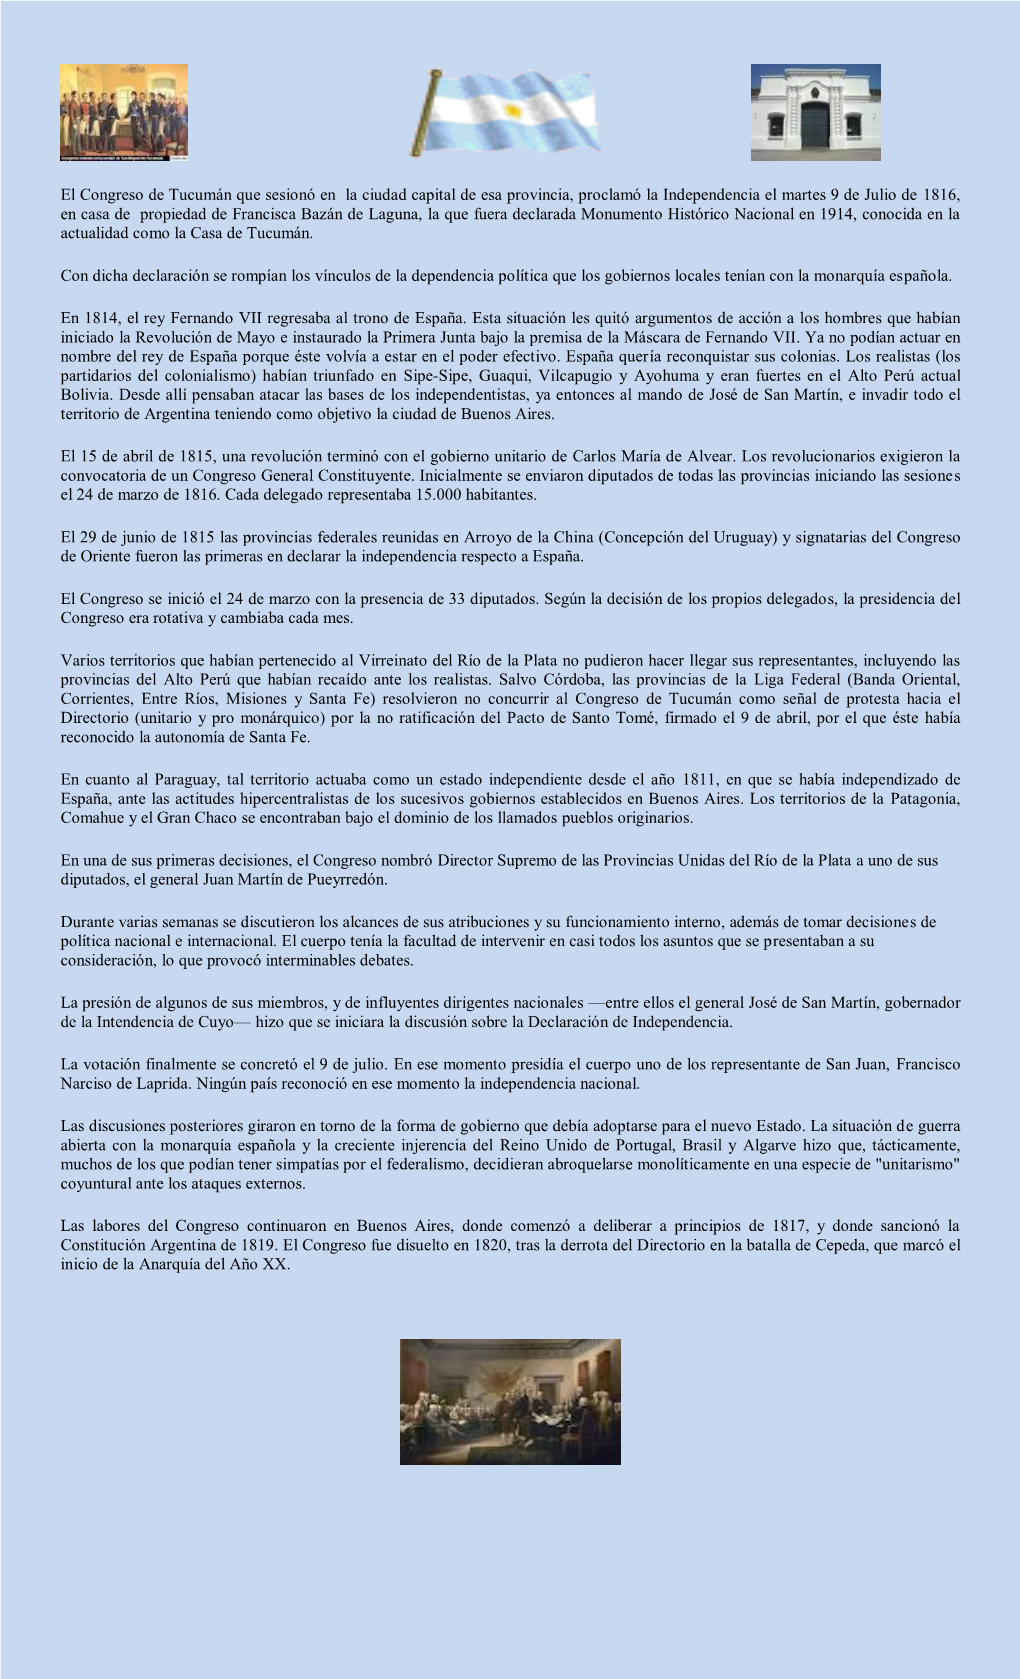 El Congreso De Tucumán Que Sesionó En La Ciudad Capital De Esa Provincia, Proclamó La Independencia El Martes 9 De Julio De